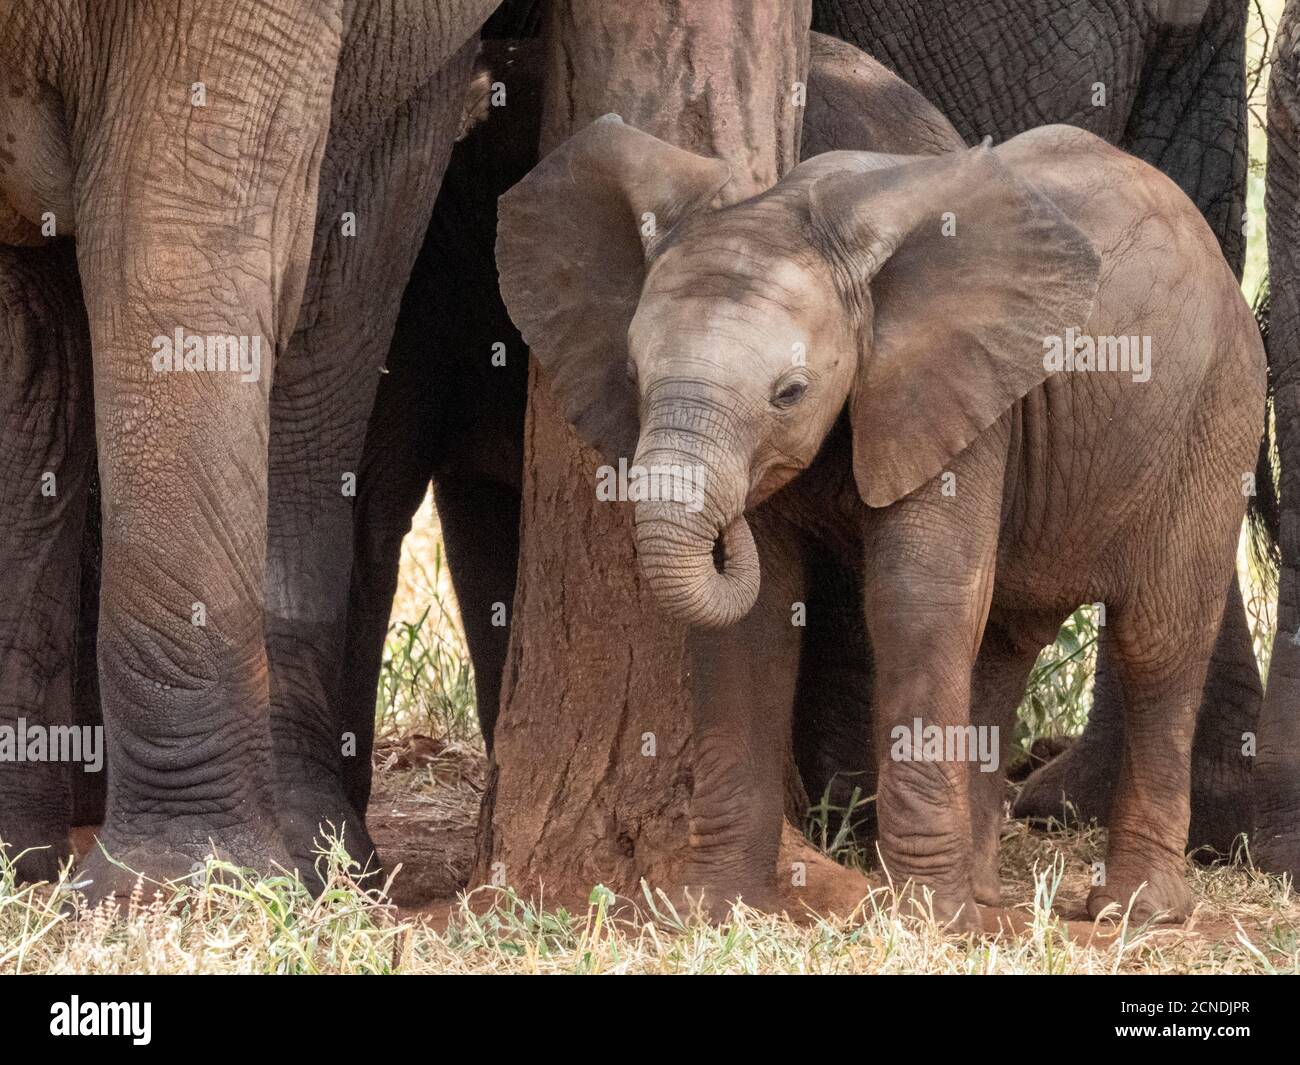 Un troupeau d'éléphants de brousse africains (Loxodonta africana), protégeant un veau nouveau-né dans le parc national de Tarangire, Tanzanie, Afrique de l'est, Afrique Banque D'Images